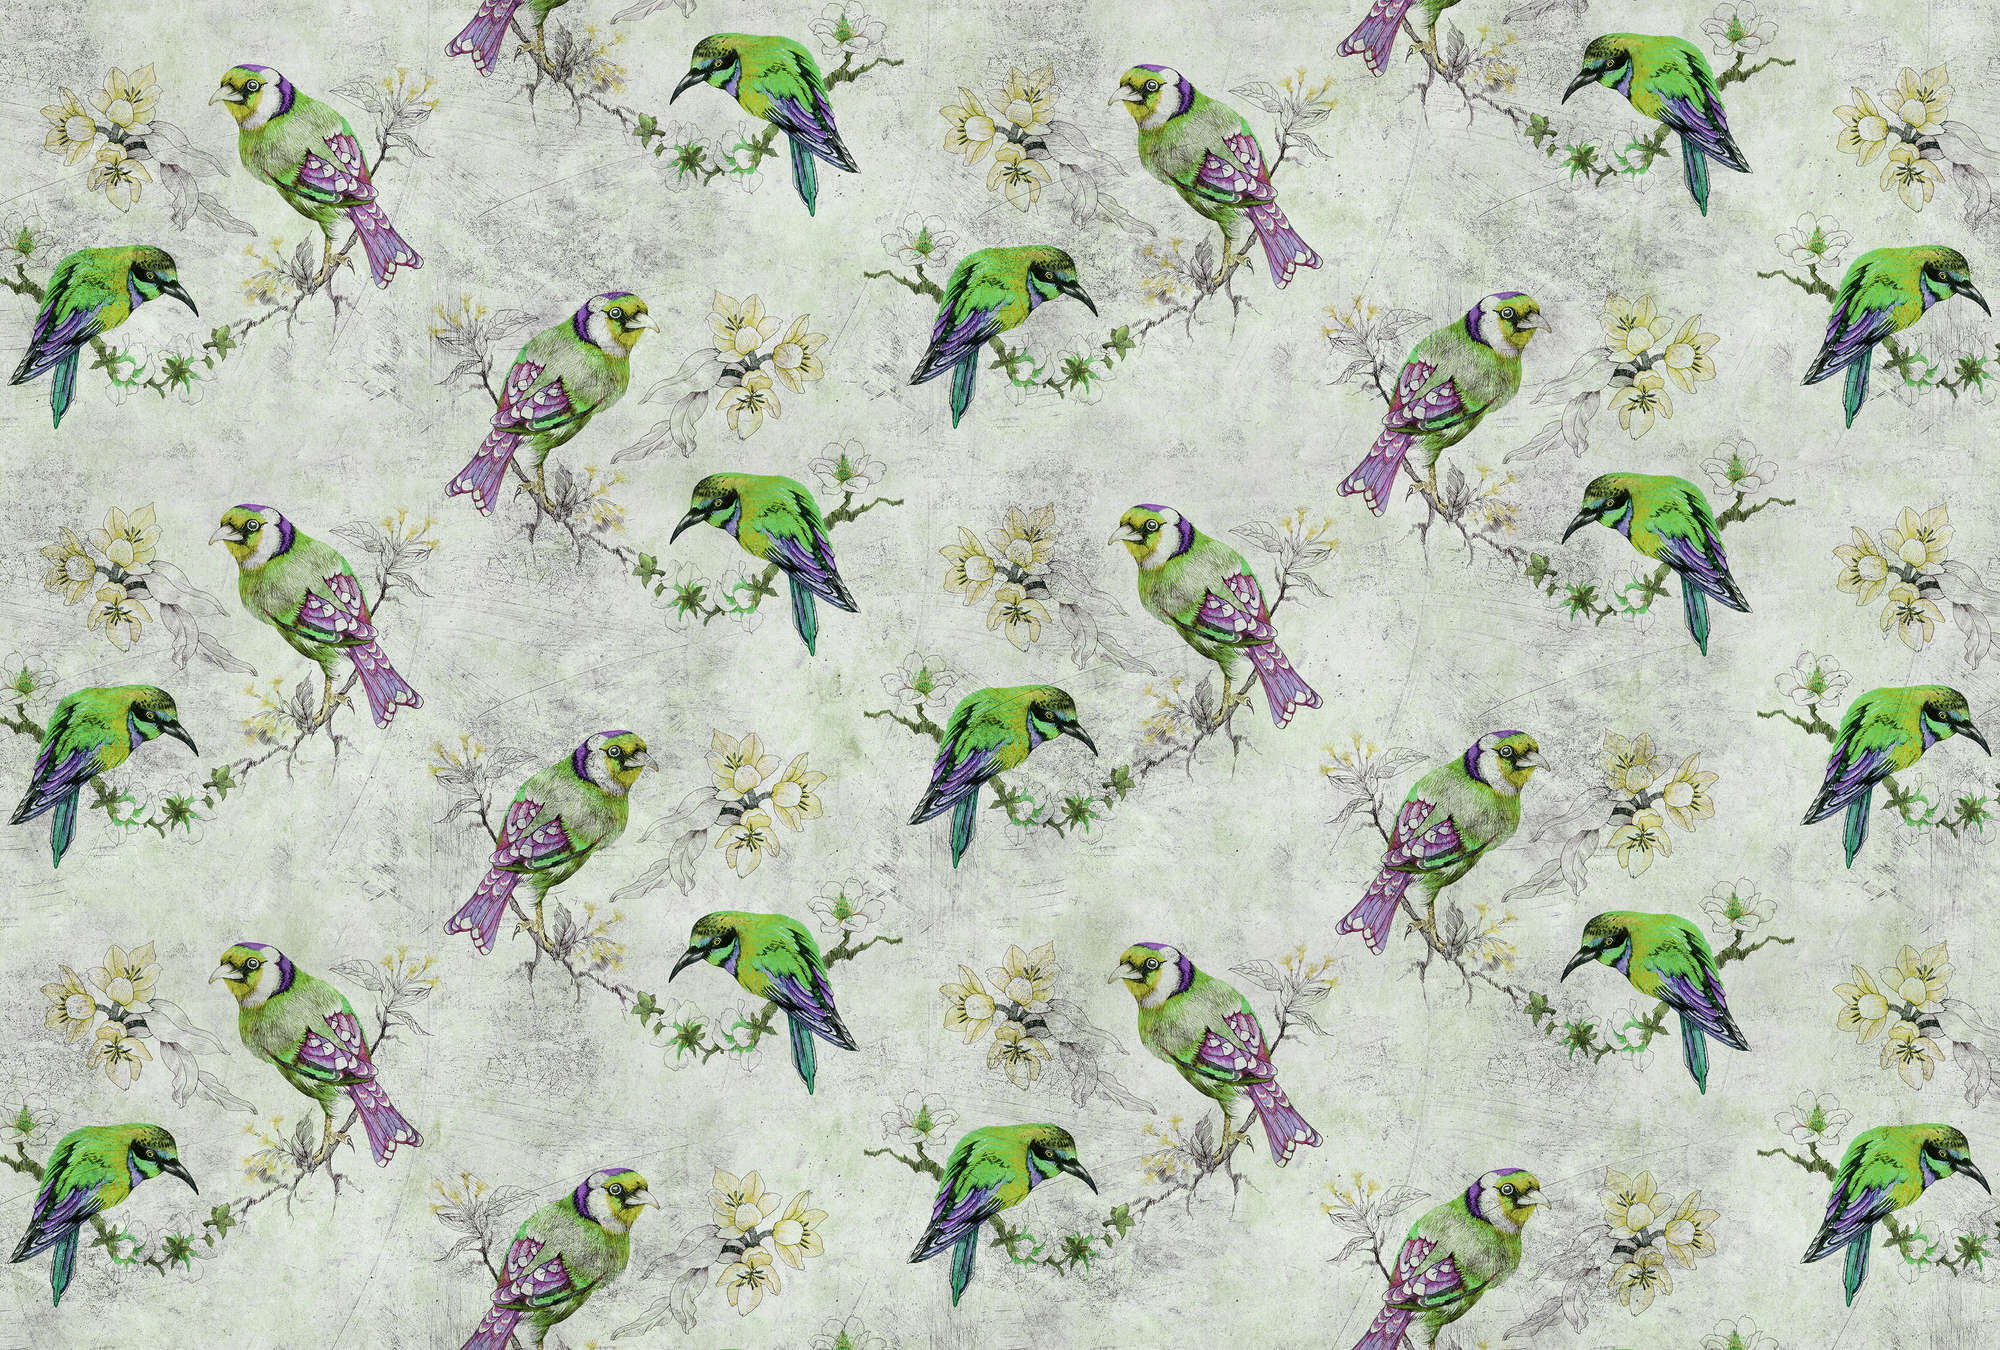             Love birds 2 - Bont fotobehang in krasstructuur met geschetste vogels - Grijs, Groen | Pearl glad vlies
        